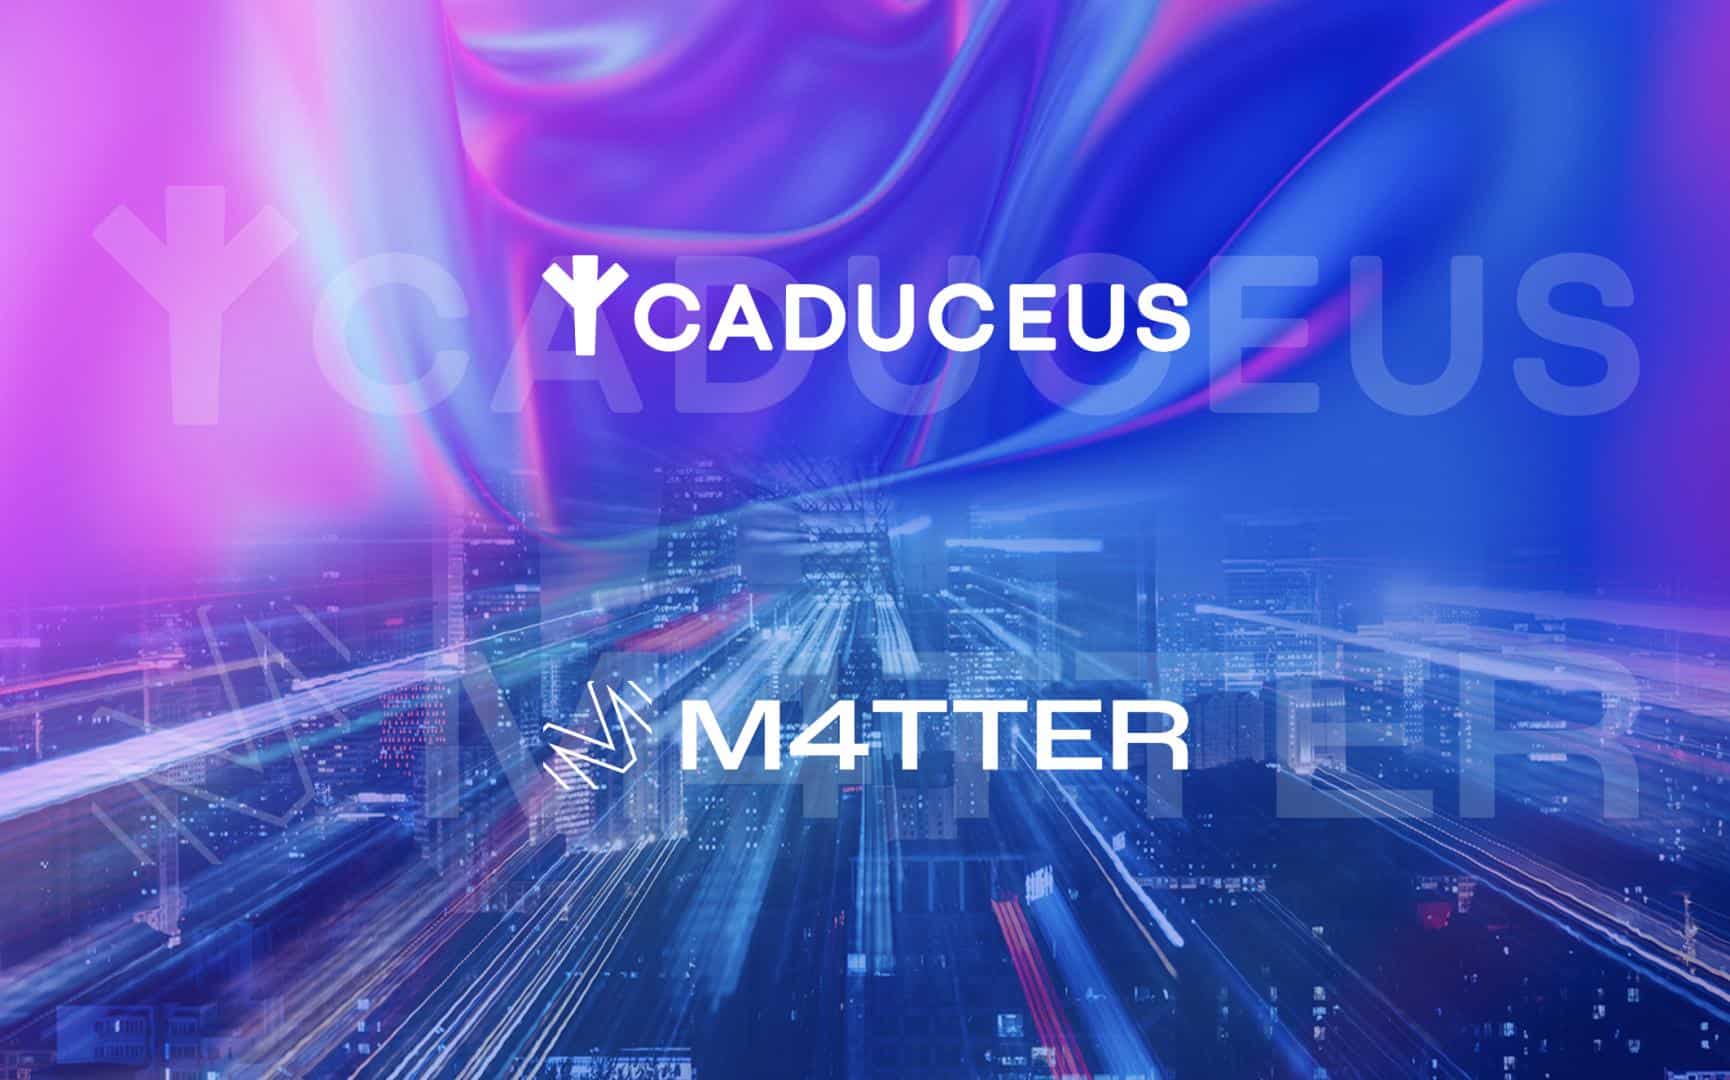 Caduceus Blockchain‍ Announces Incubator Program M4TTER